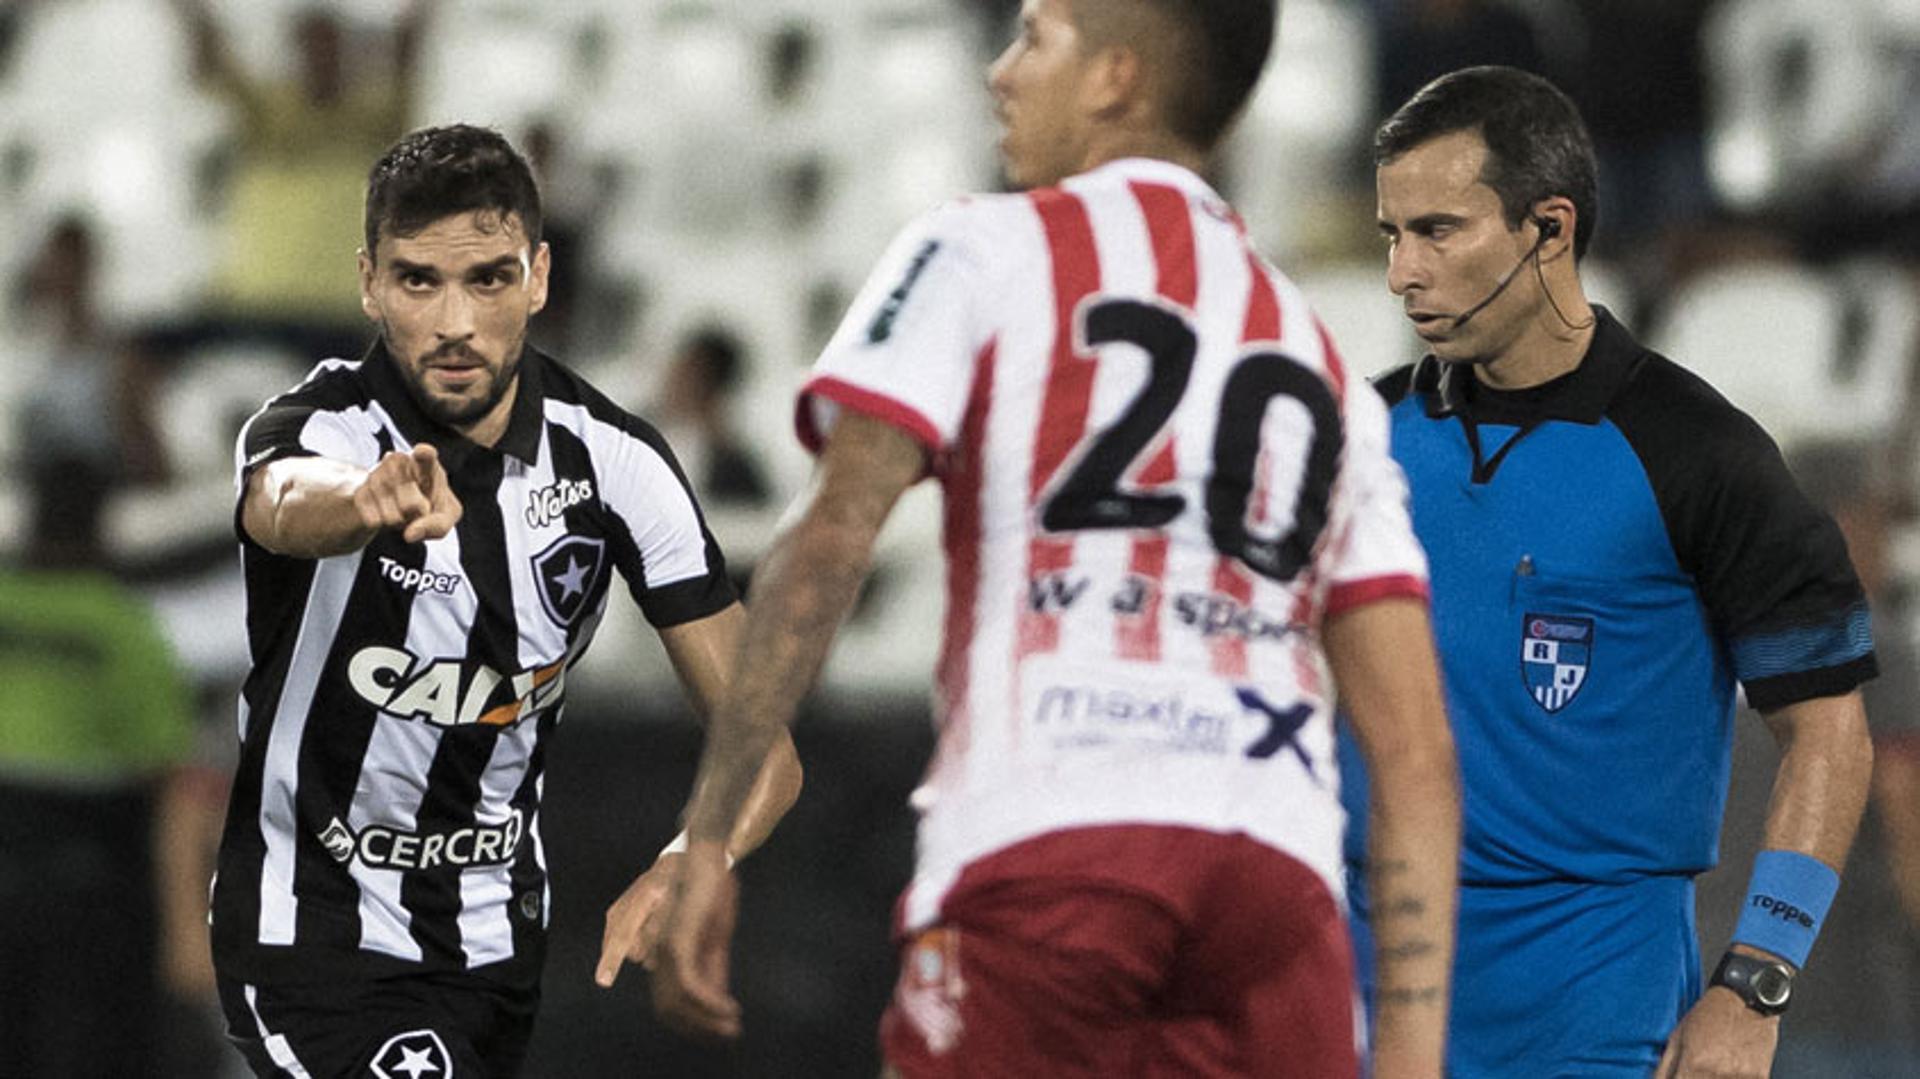 Botafogo 1 x 0 Bangu - último encontro entre as equipes aconteceu em 6 de março de 2018